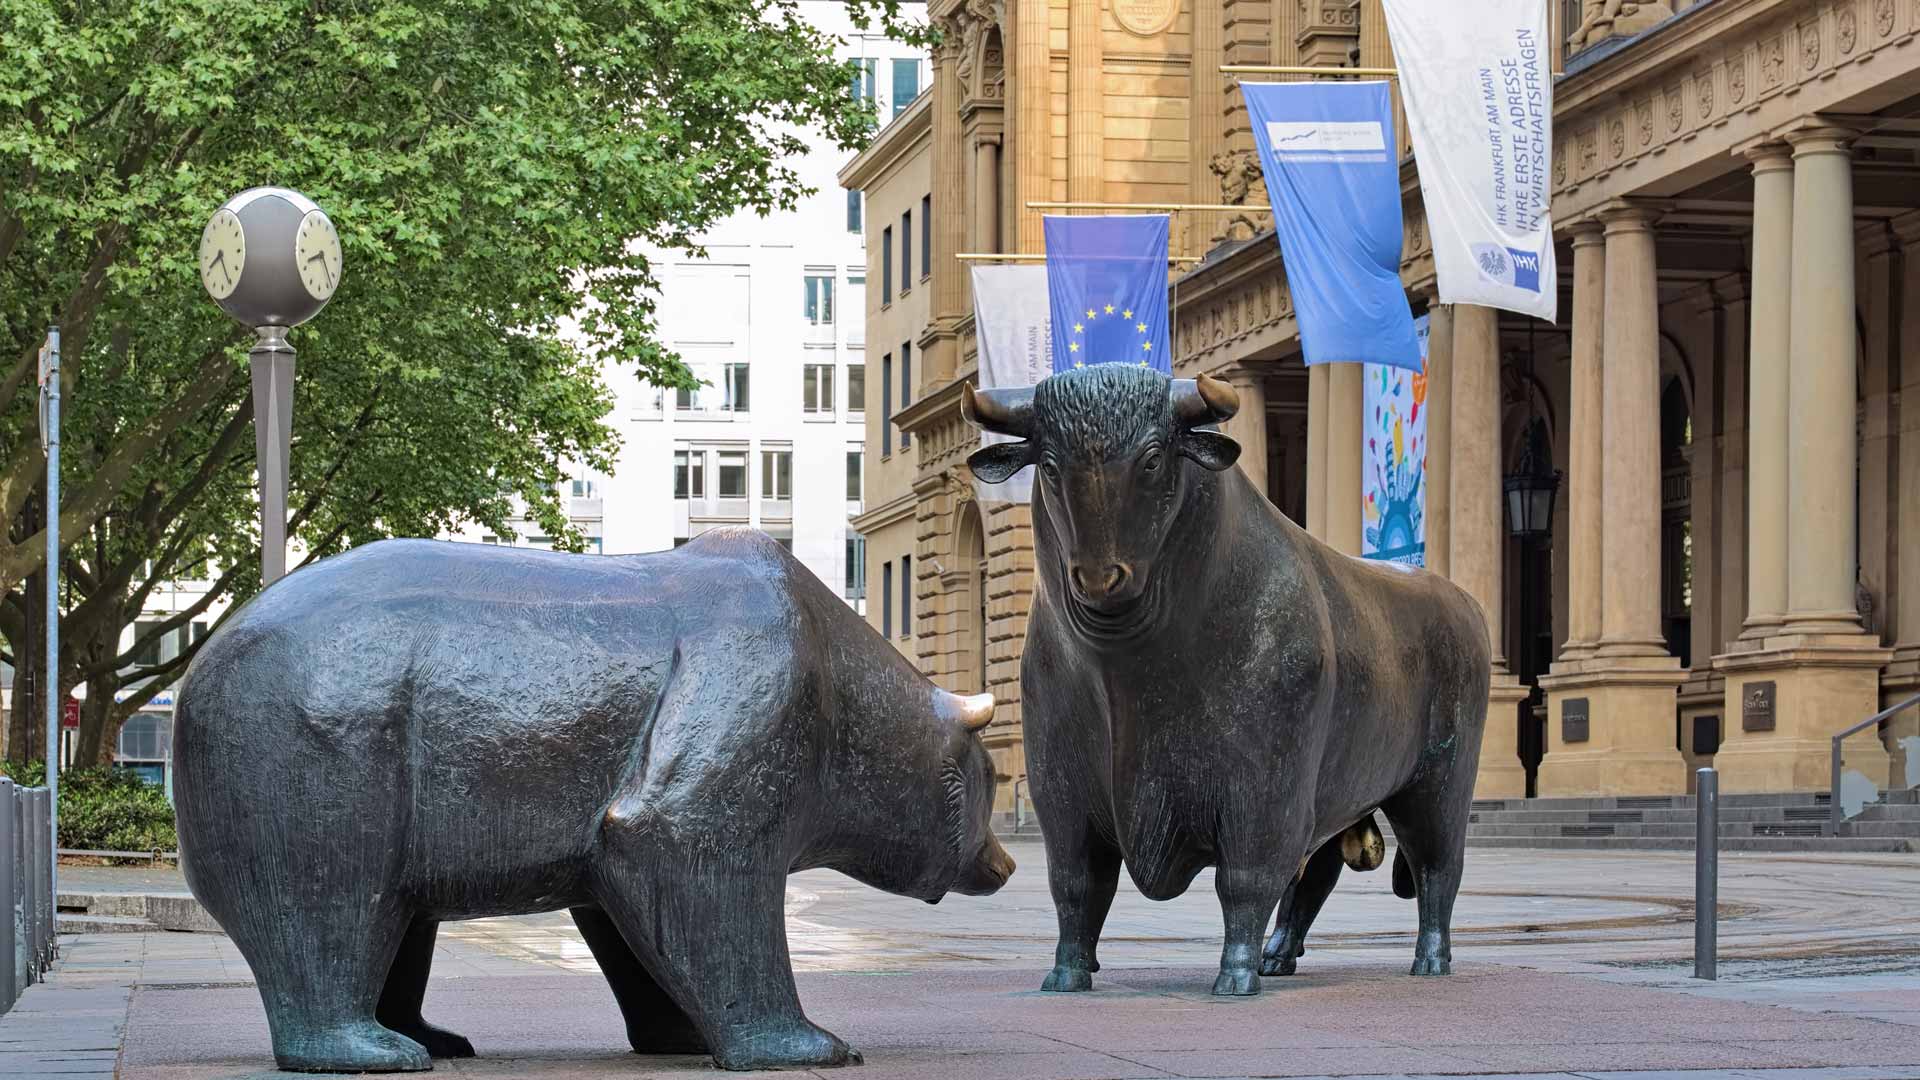 Bulle und Bär vor der Deutschen Börse in Frankfurt am Main, Foto von Mikhail Markovskiy - stock.adobe.com